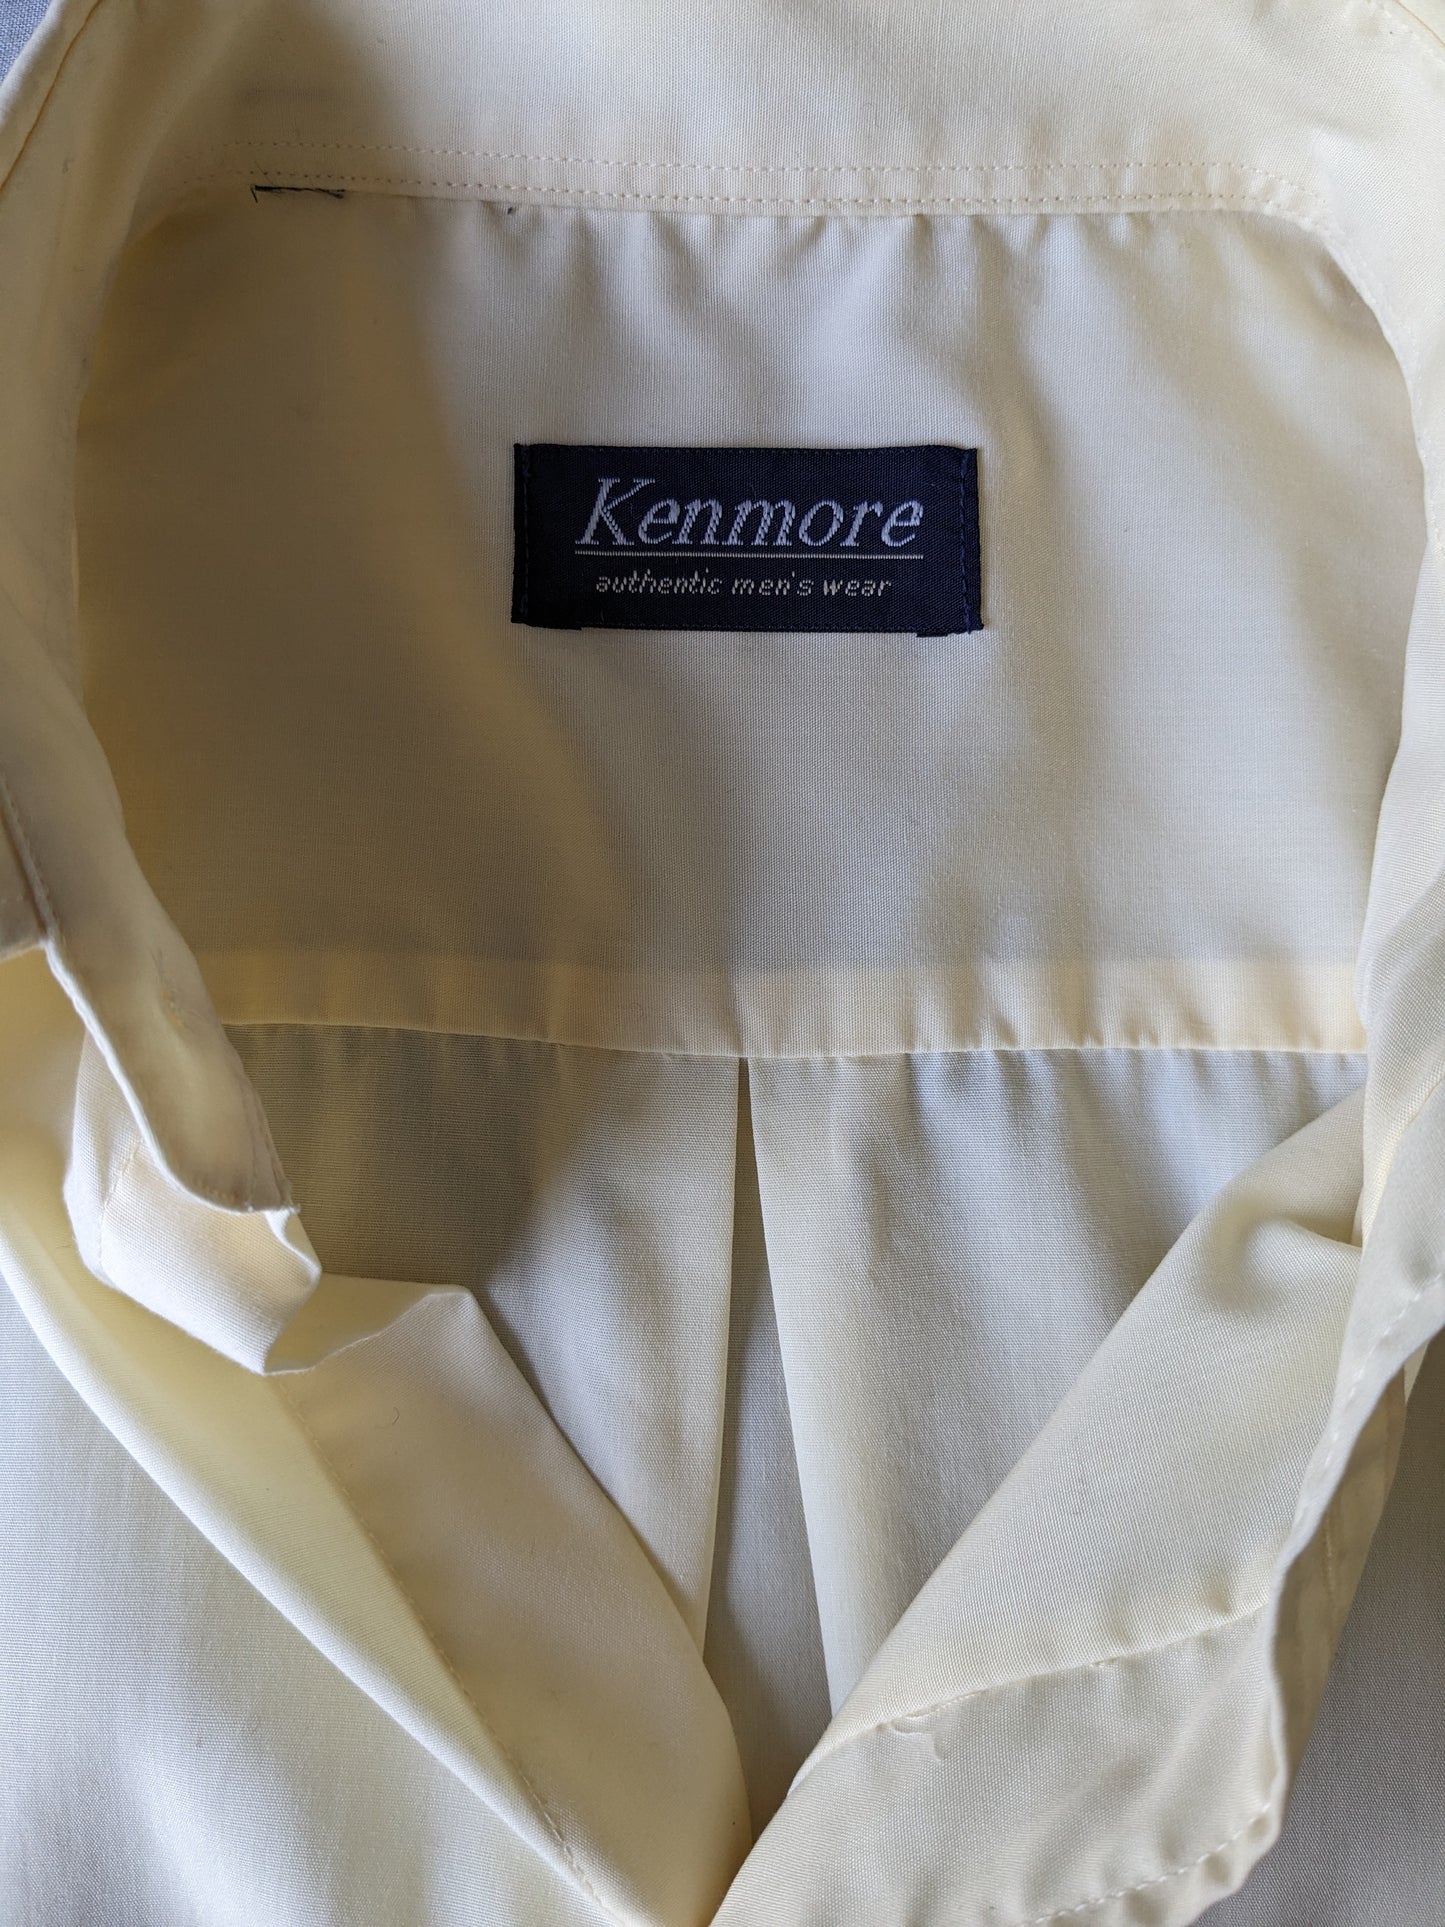 Camisa de Kenmore Vintage manga corta. Color amarillo claro. Tamaño xl.